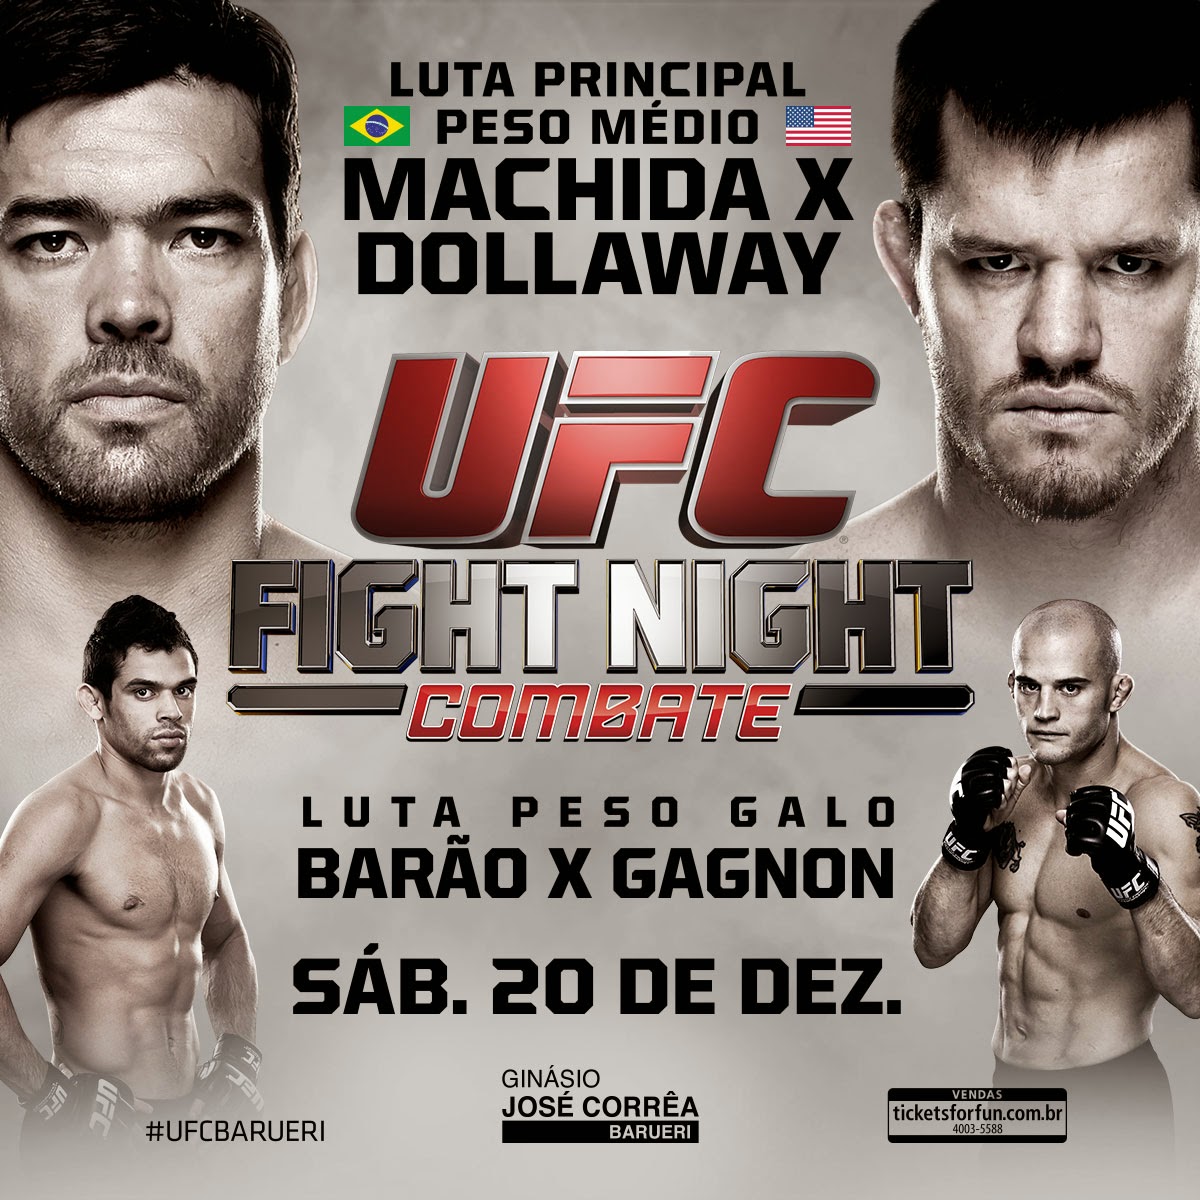 UFC Fight Night: Machida vs Dollaway